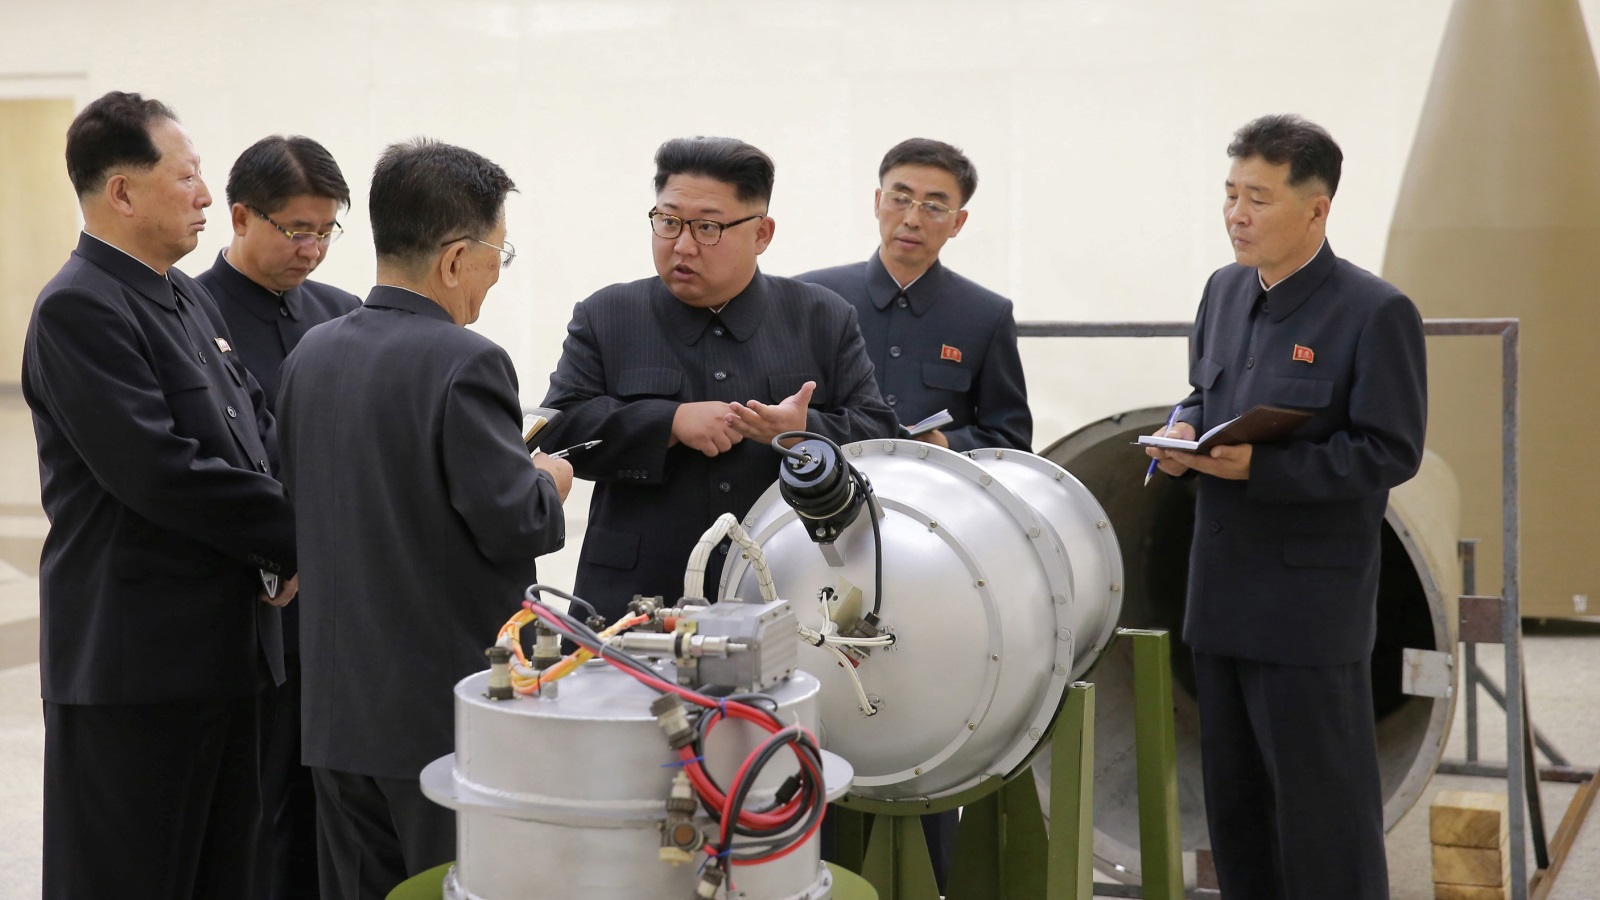 كوريا الشمالية لعبت دور المزود المطلوب لاحتياجات مصر من السلاح النووي، فيما لو كانت مصر تسعى لإعادة إحياء برنامجها للتخصيب النووي (رويترز)